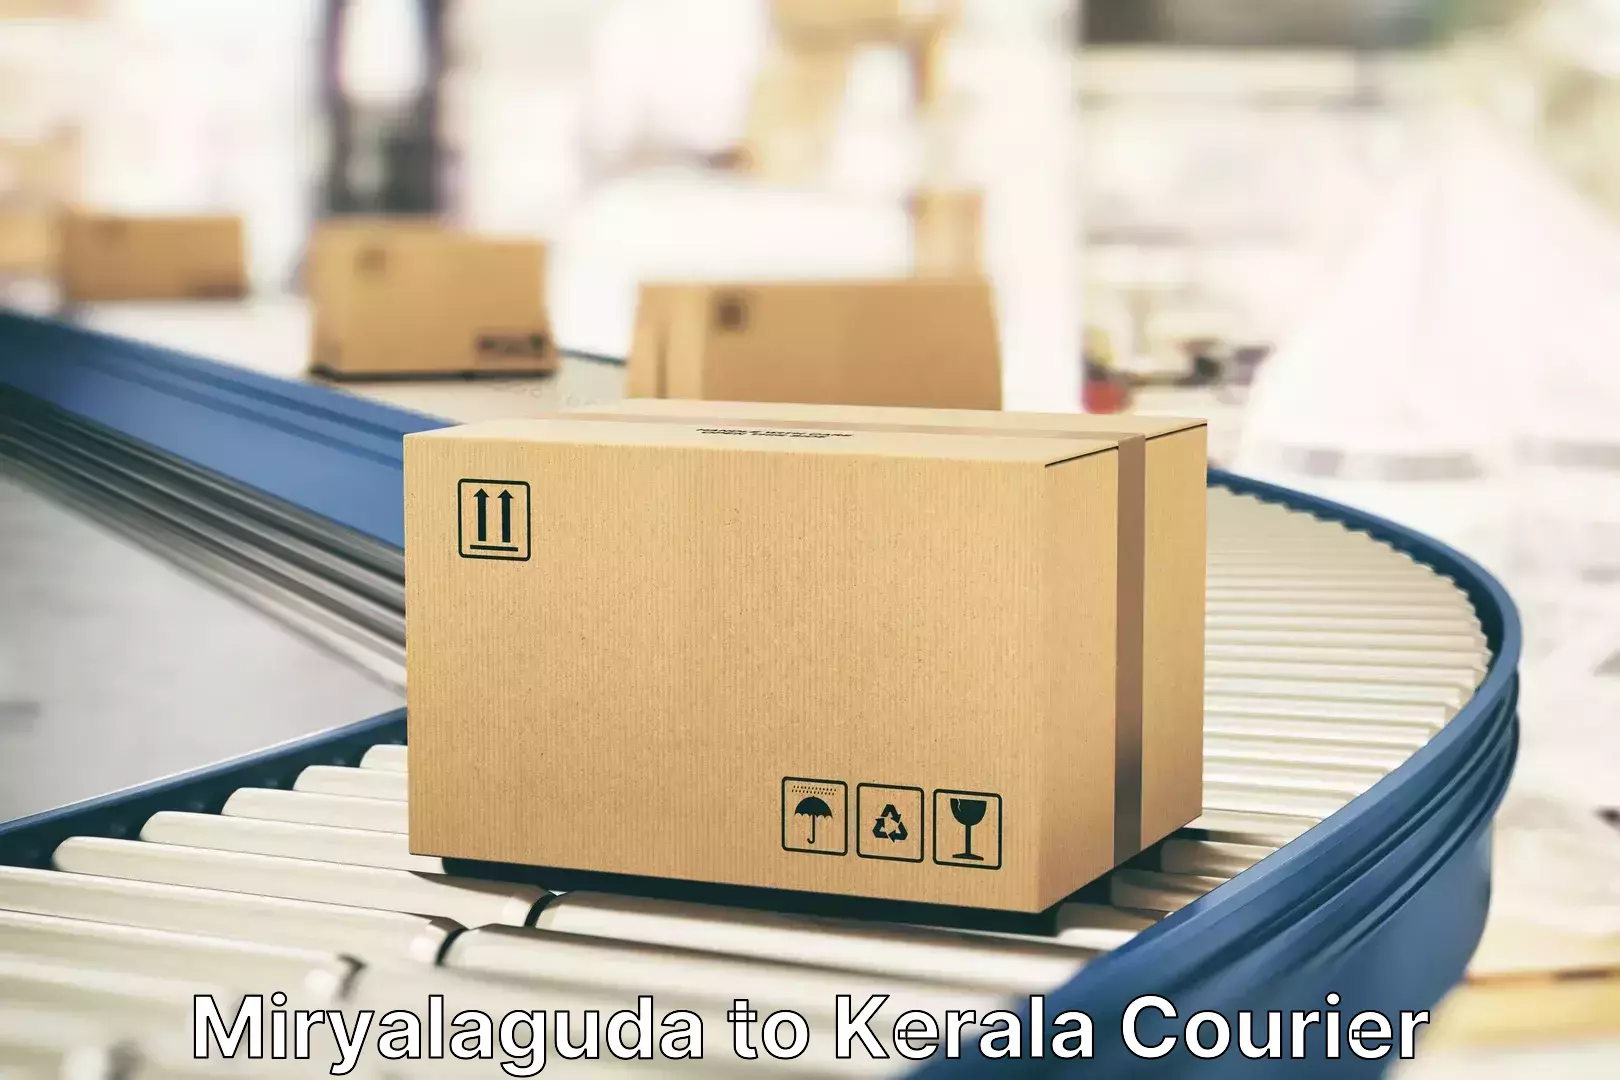 Luggage delivery network Miryalaguda to NIT Calicut